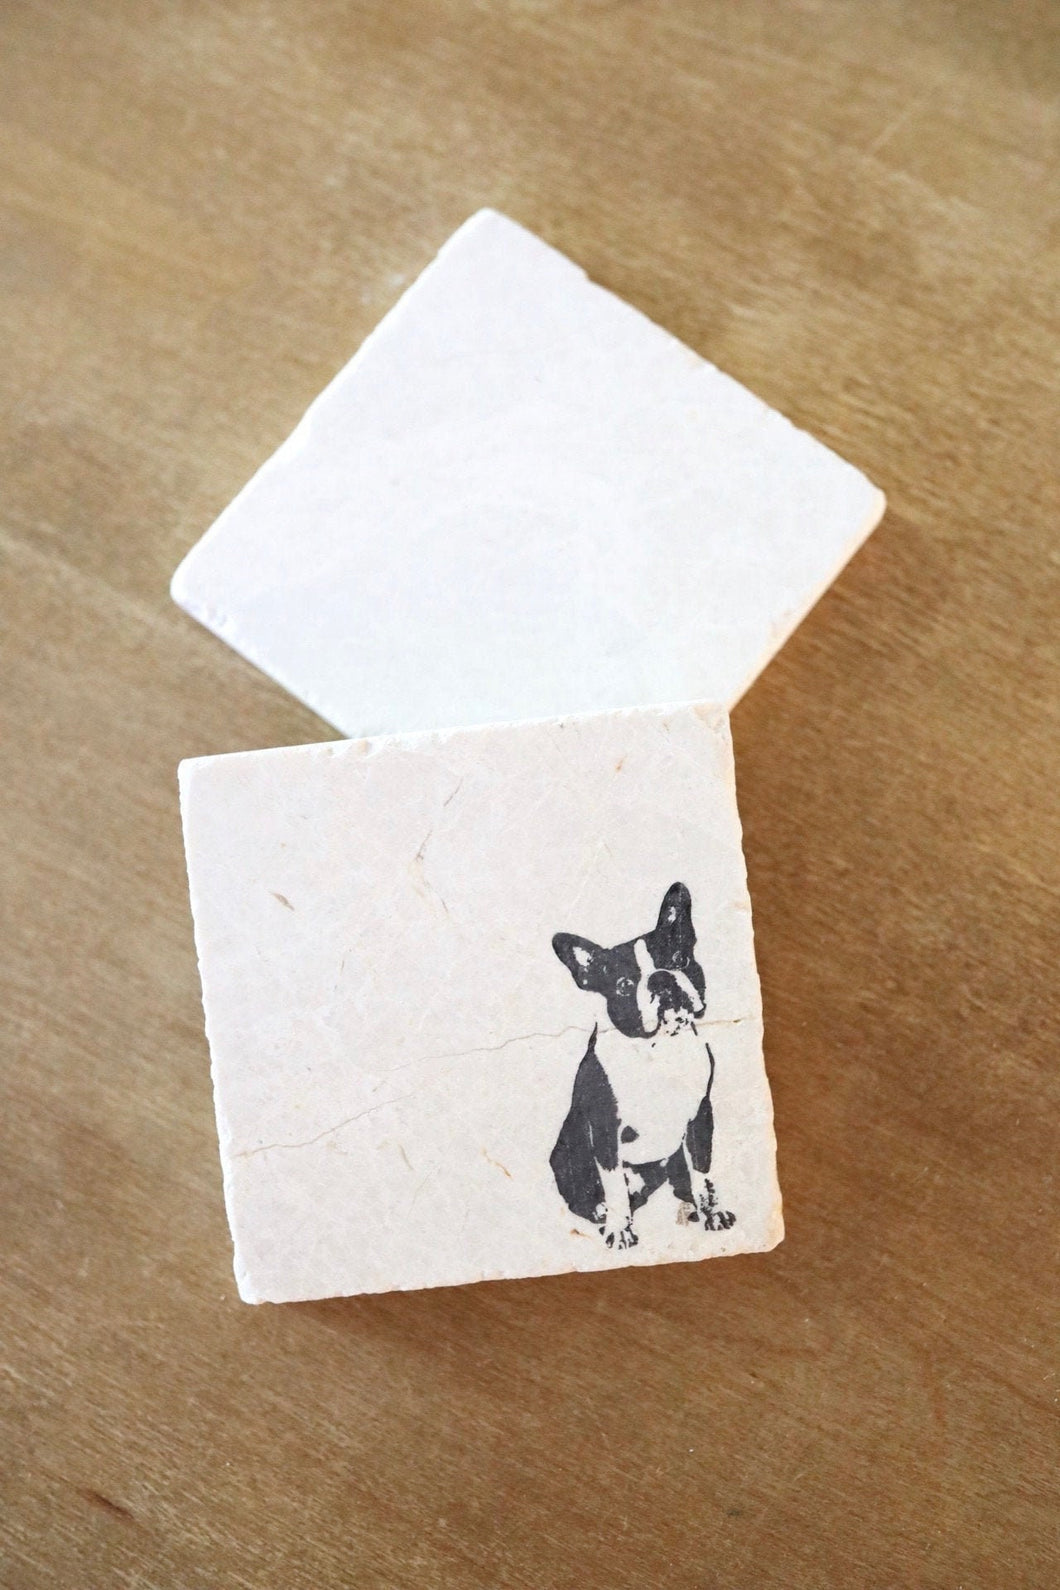 Boston Terrier Dog Coasters/ boston terrier marble coaster set/ boston terrier gift/ stone coasters